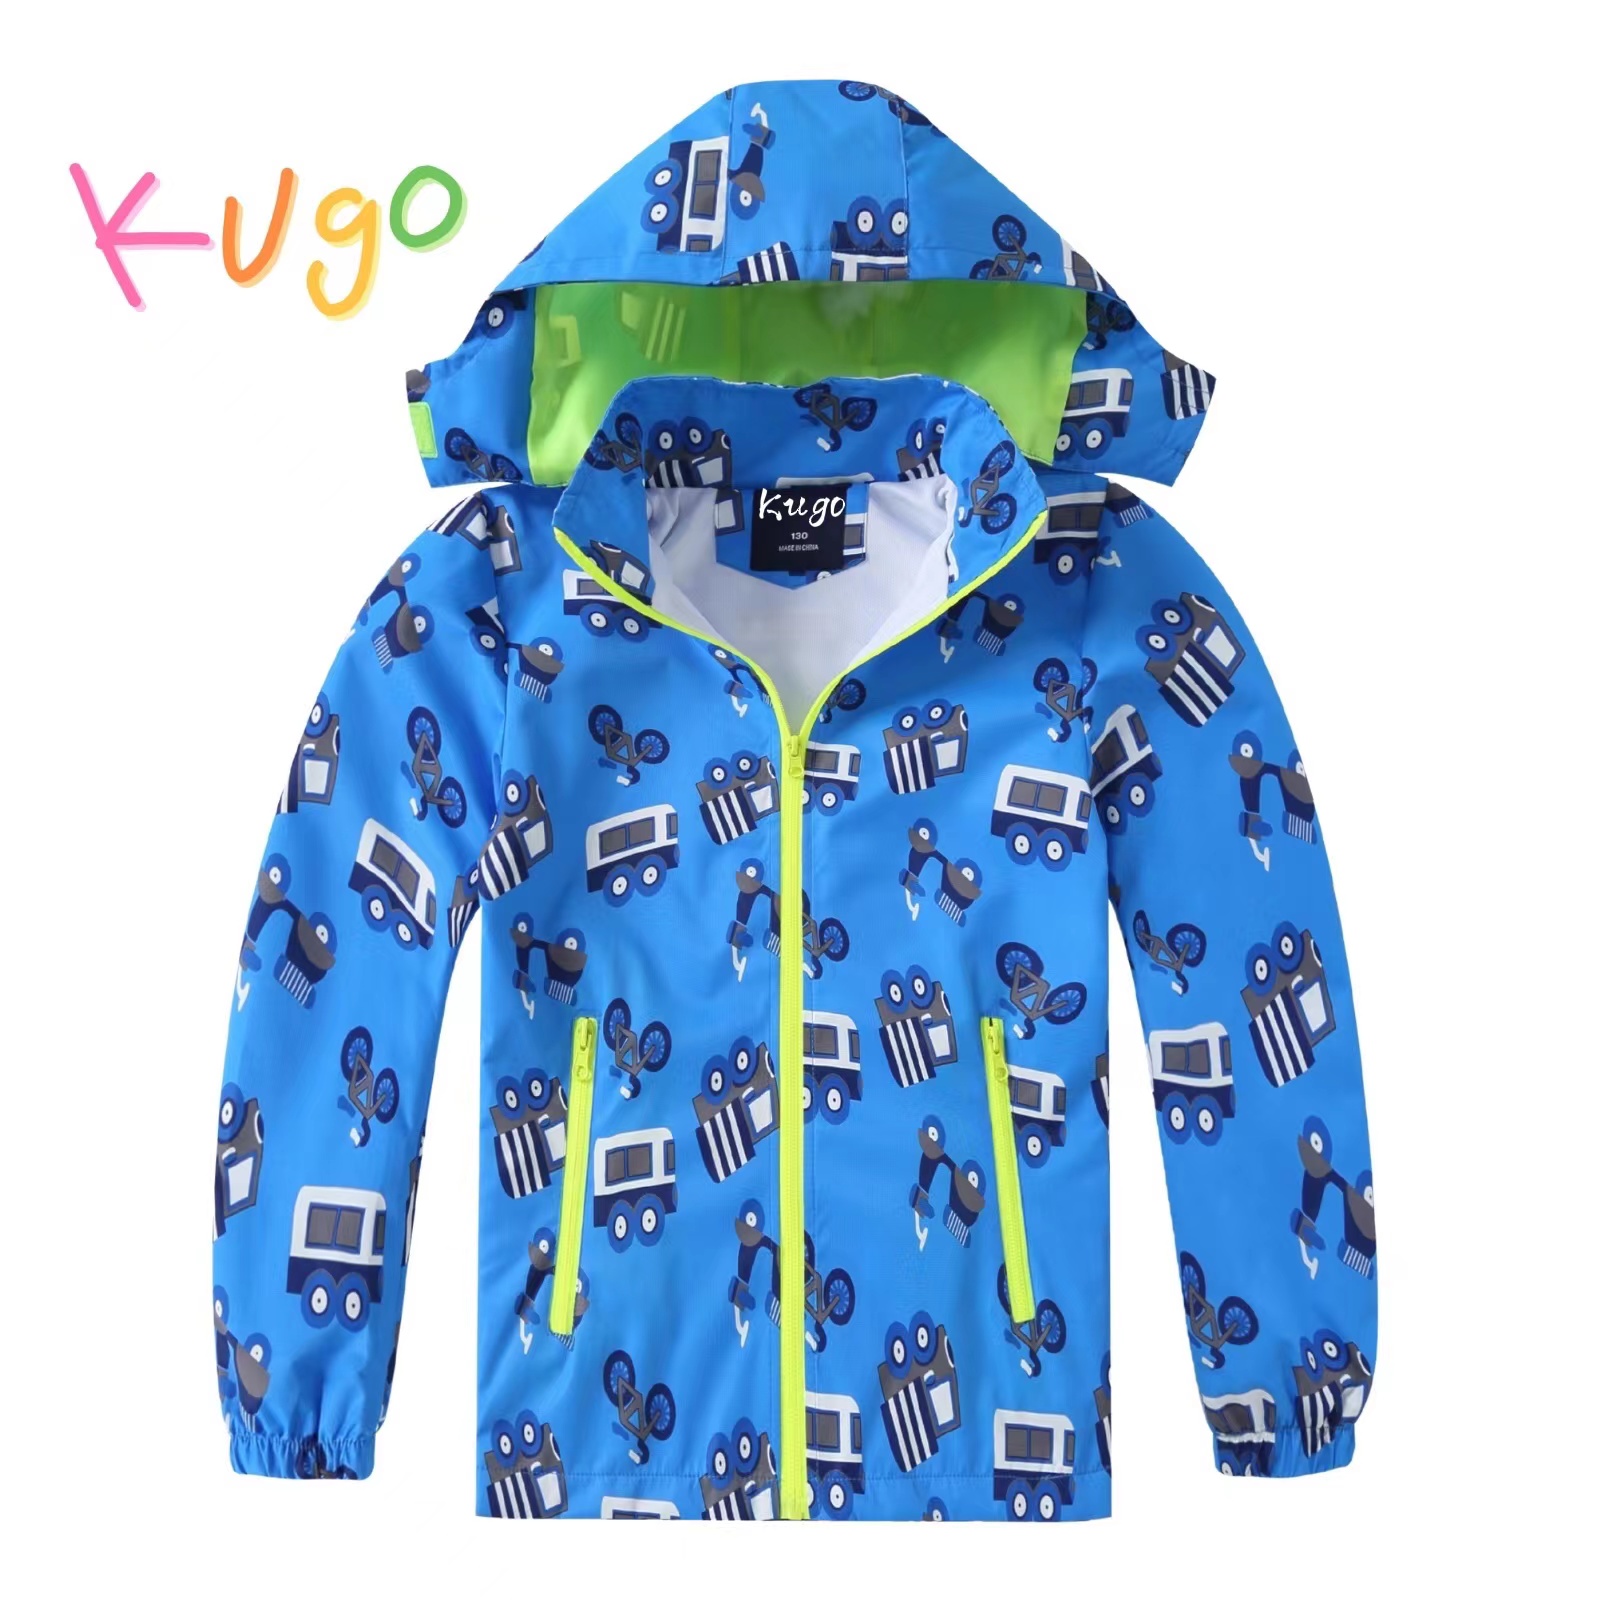 Chlapecká jarní, podzimní bunda - KUGO B2840, světle modrá Barva: Modrá, Velikost: 110